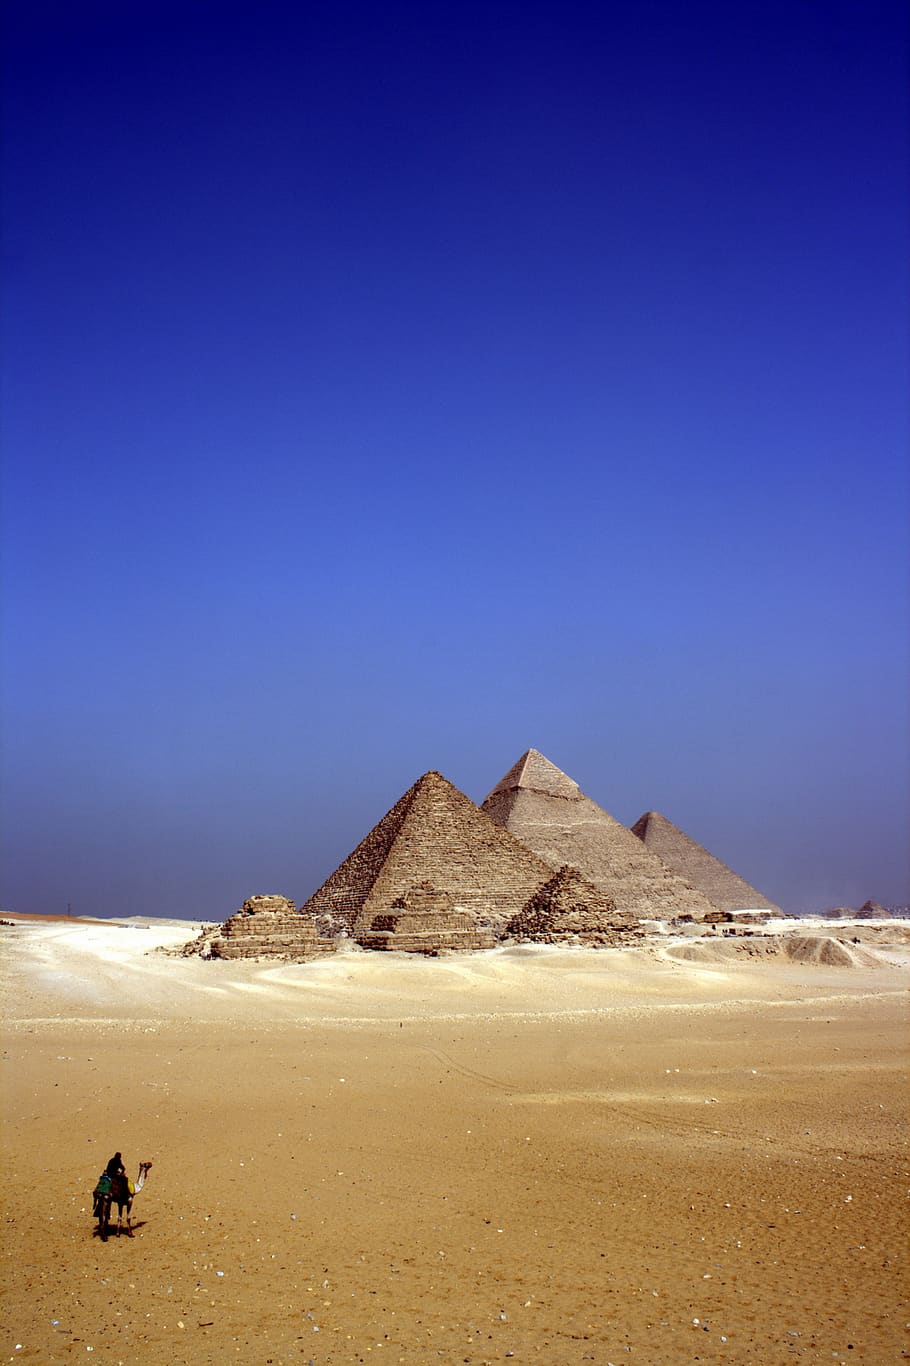 mesir, gurun, hewan, unta, pasir, struktur, arsitektur, piramida, langit, biru